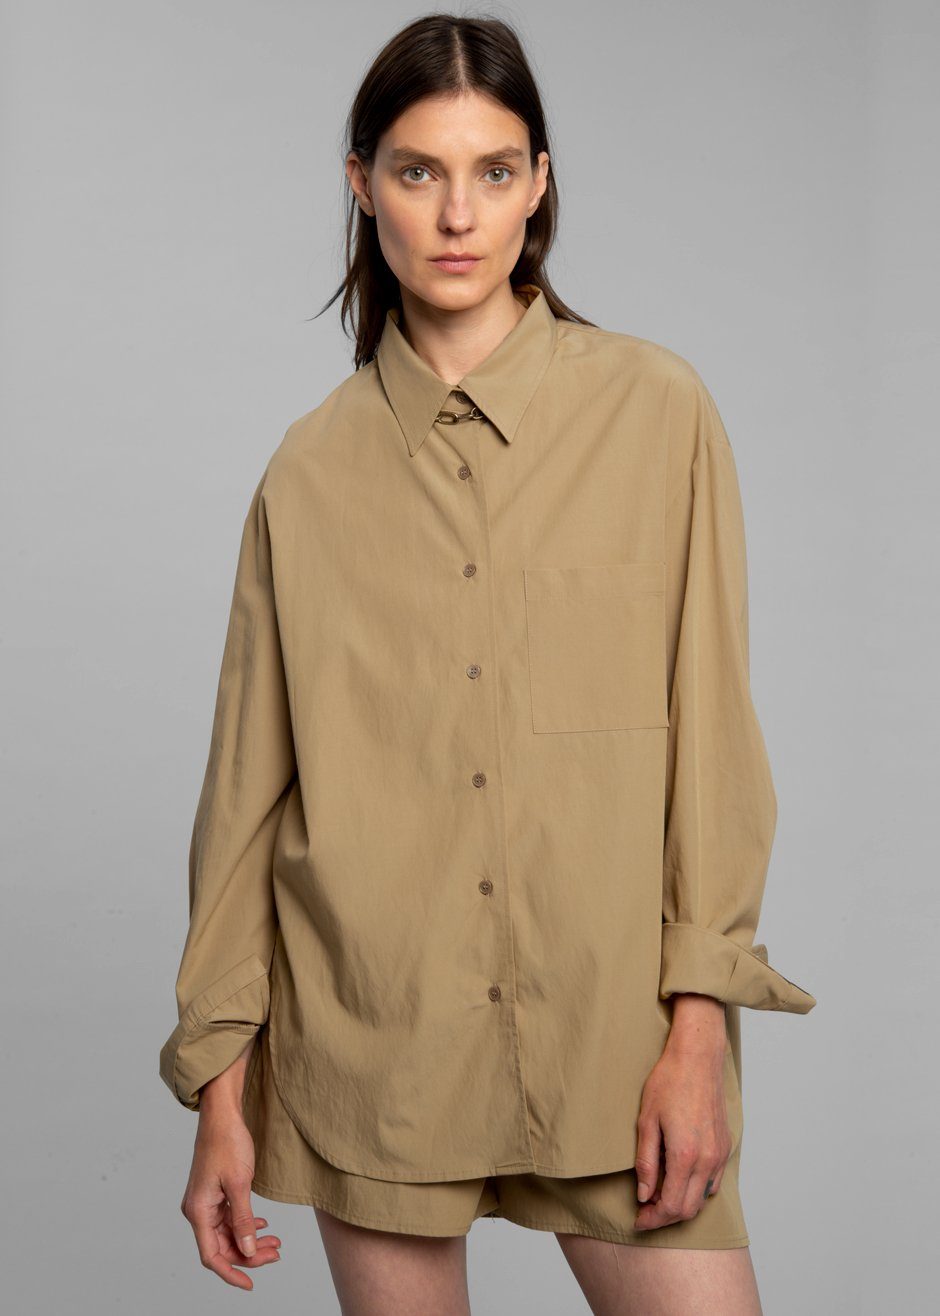 Lui Organic Cotton Shirt - Sahara - 4